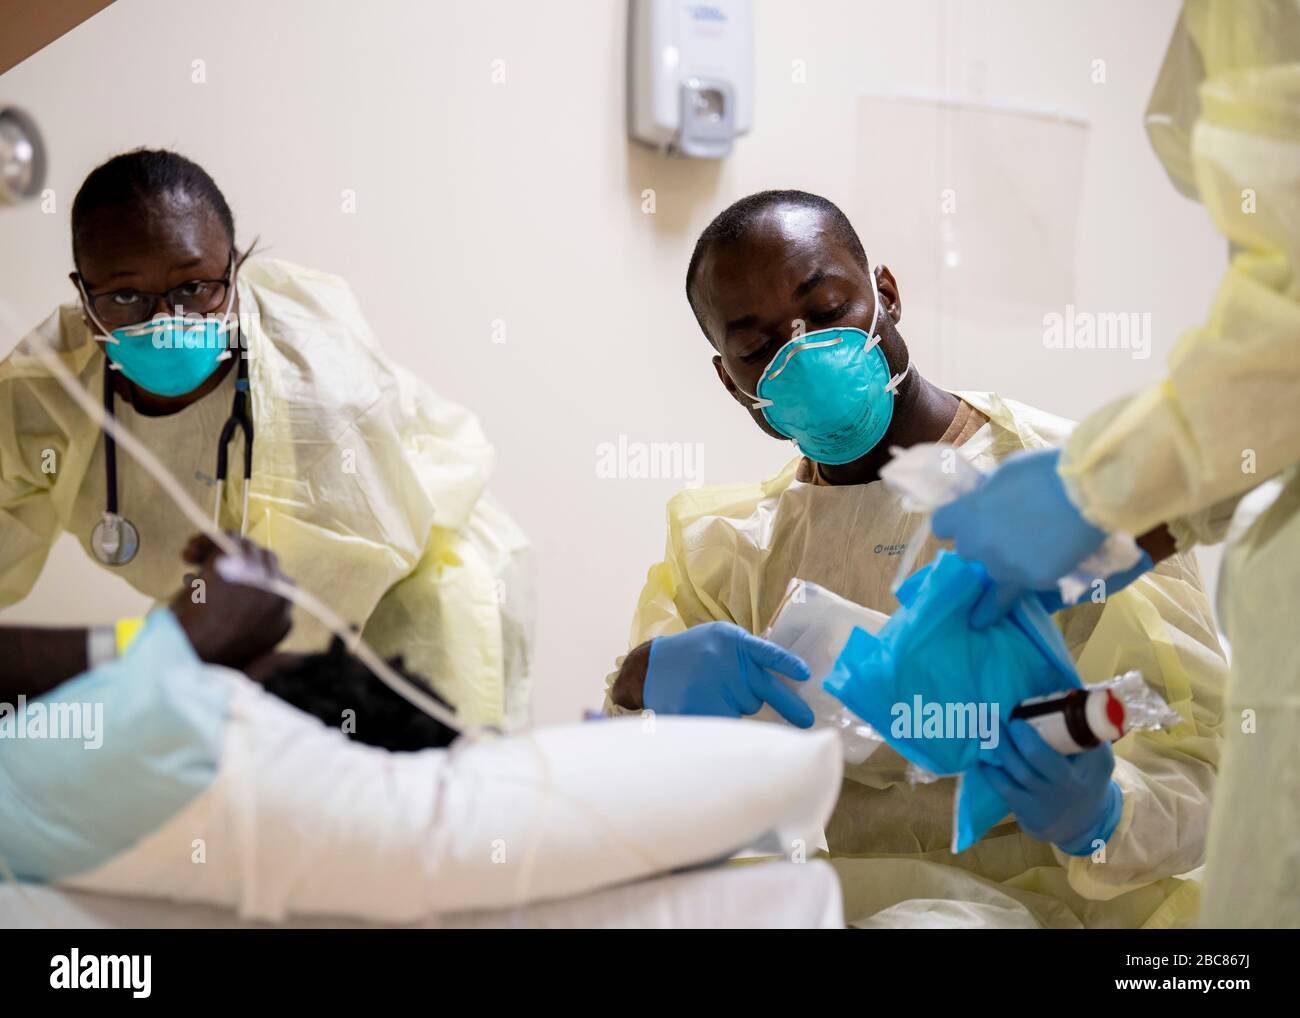 Los marineros de la Marina de los Estados Unidos tratan a un paciente a bordo del buque del hospital USNS Mercy desplegado en apoyo de la COVID-19, la pandemia del coronavirus el 1 de abril de 2020 en los Ángeles, California. Foto de stock